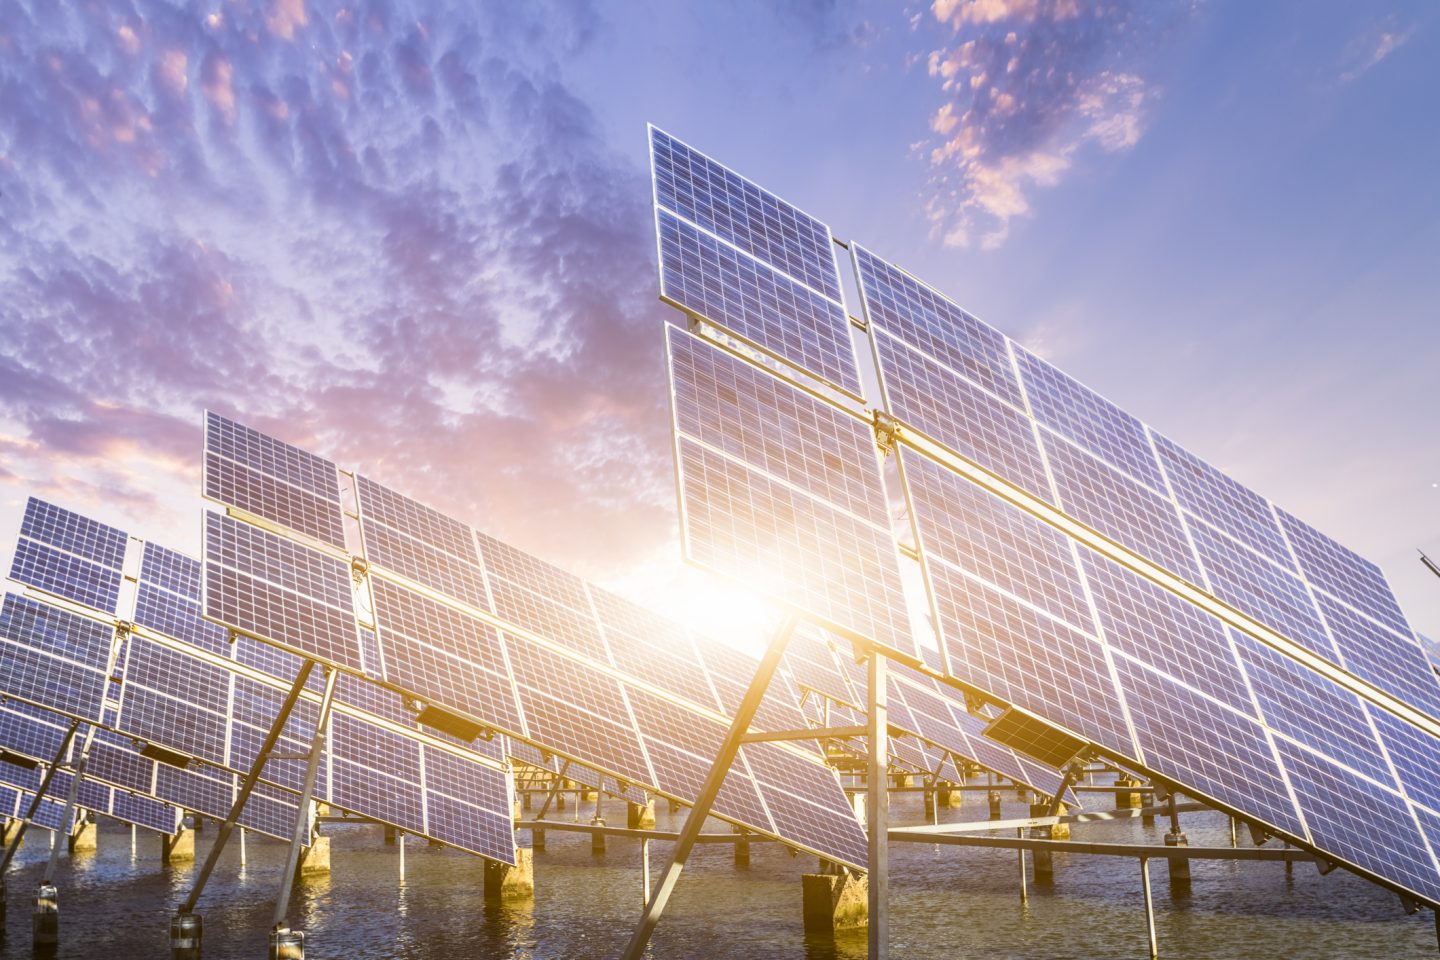 كل ما تريد معرفته عن أنظمة الطاقة الشمسية: آفاق استخدام التكنولوجيا الشمسية